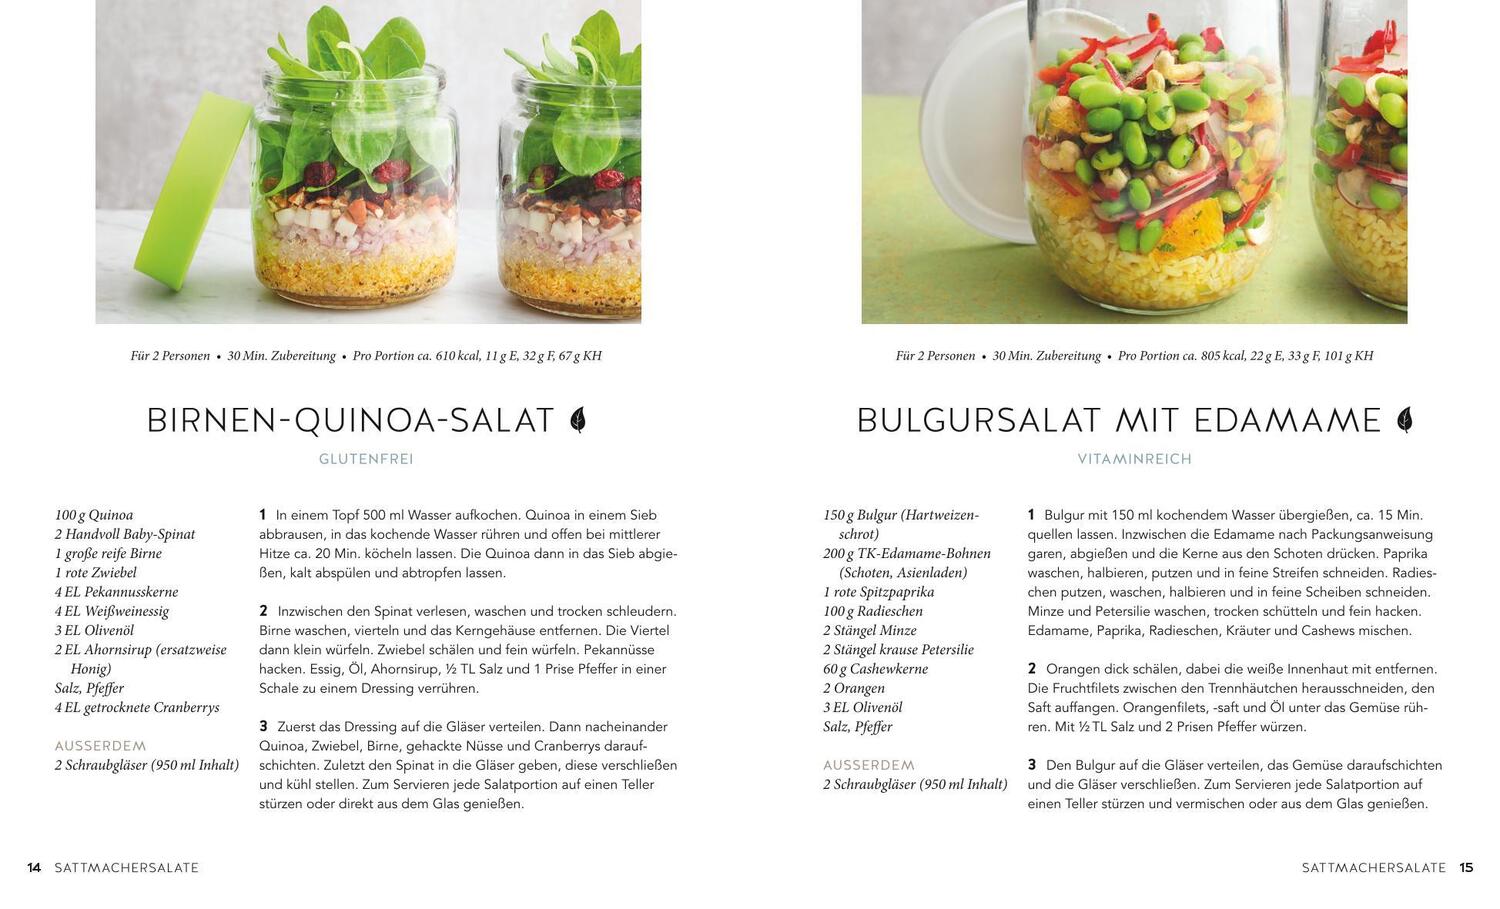 Bild: 9783833873003 | Salate to go | Nico Stanitzok | Taschenbuch | GU KüchenRatgeber | 2020